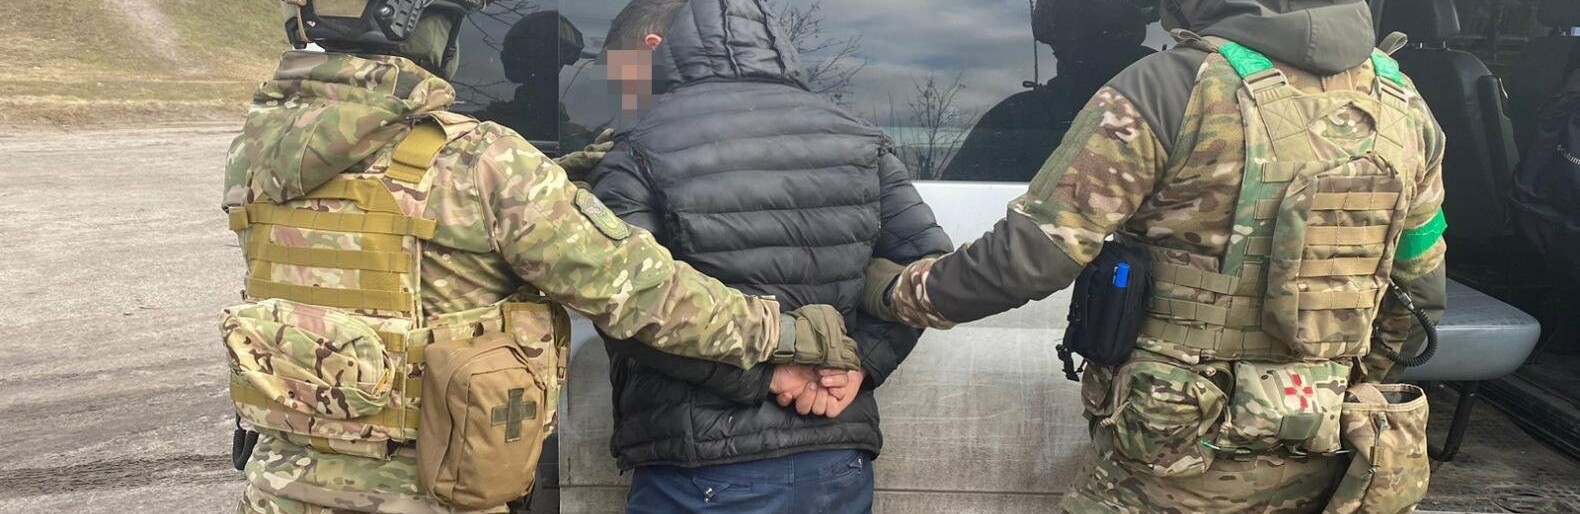 На Харківщині затримали чоловіка із Сумщини, якого підозрюють у вбивстві та розшукували більше року